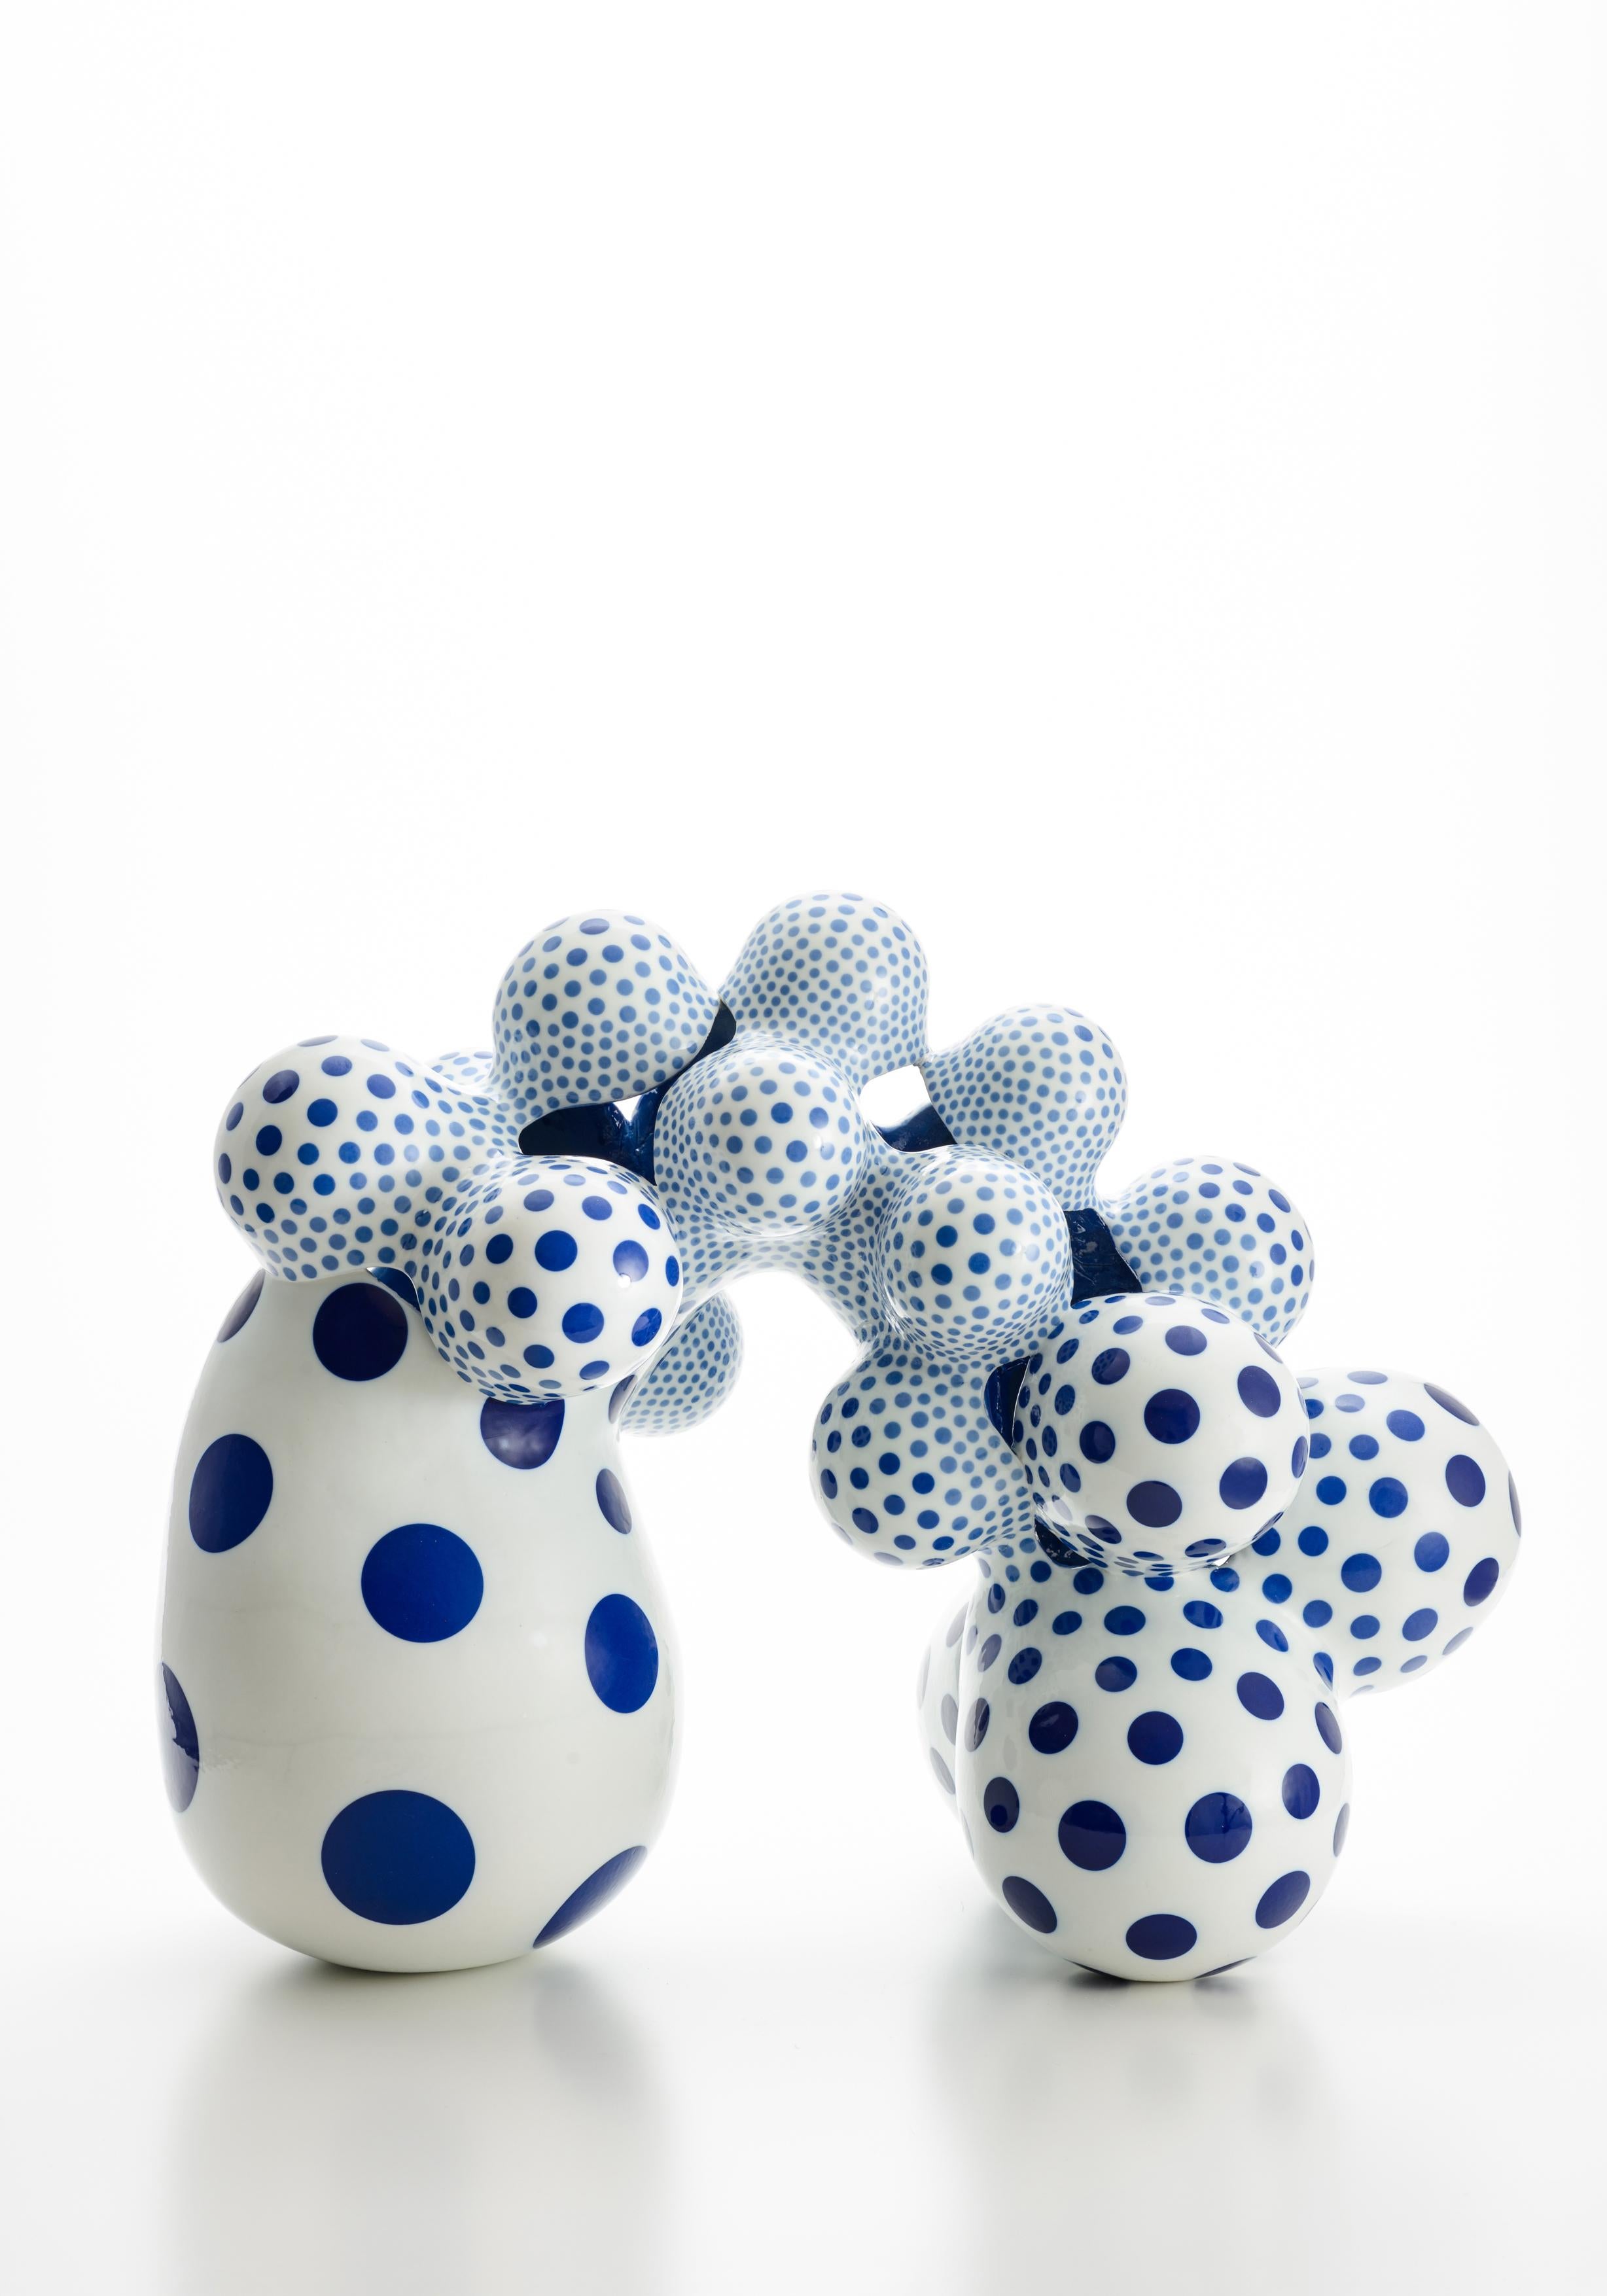 Harumi Nakashima Abstract Sculpture - "Proliferating Forms 2037", Contemporary, Ceramic, Sculpture, Porcelain, Japan